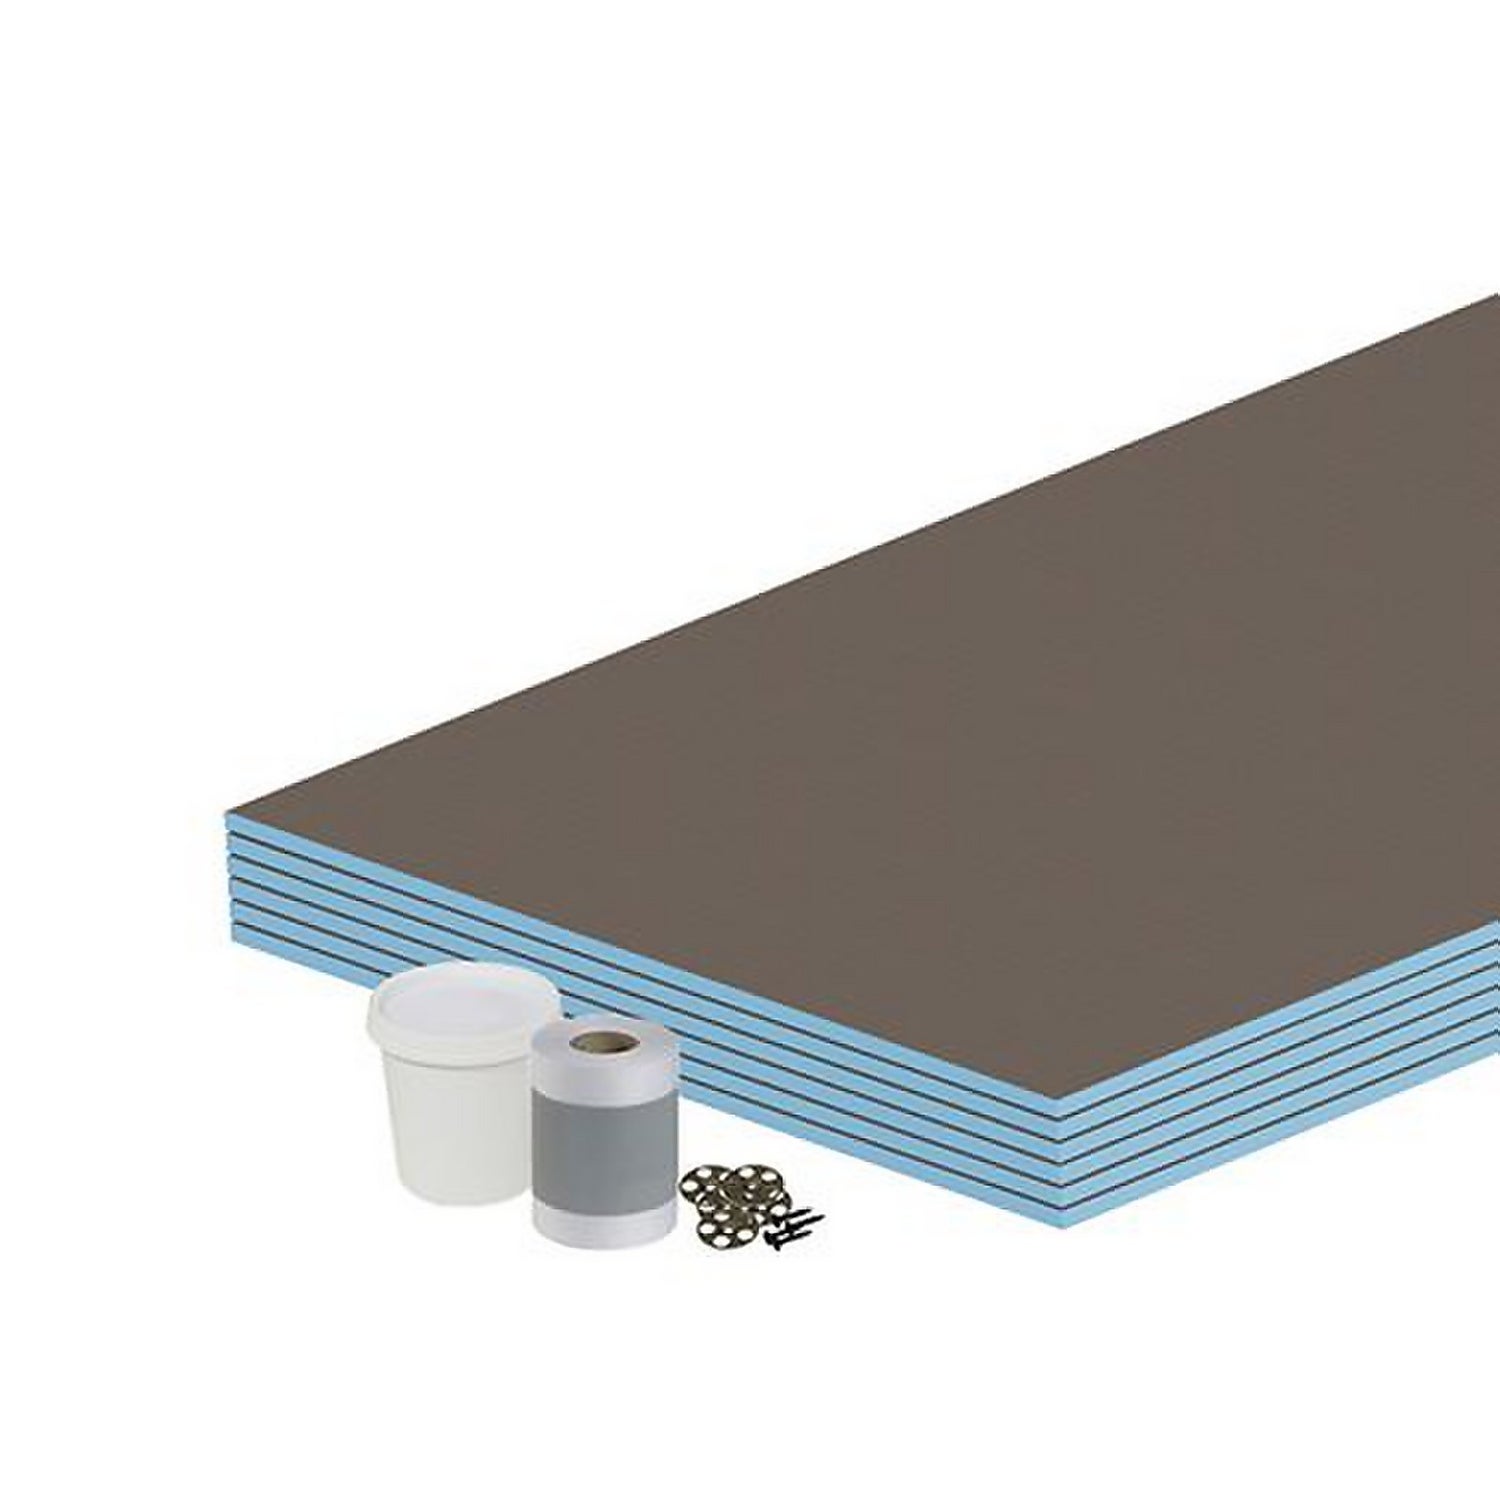 Floor Kit 10mm Tile Backer Board 4.32m2 for Wet room